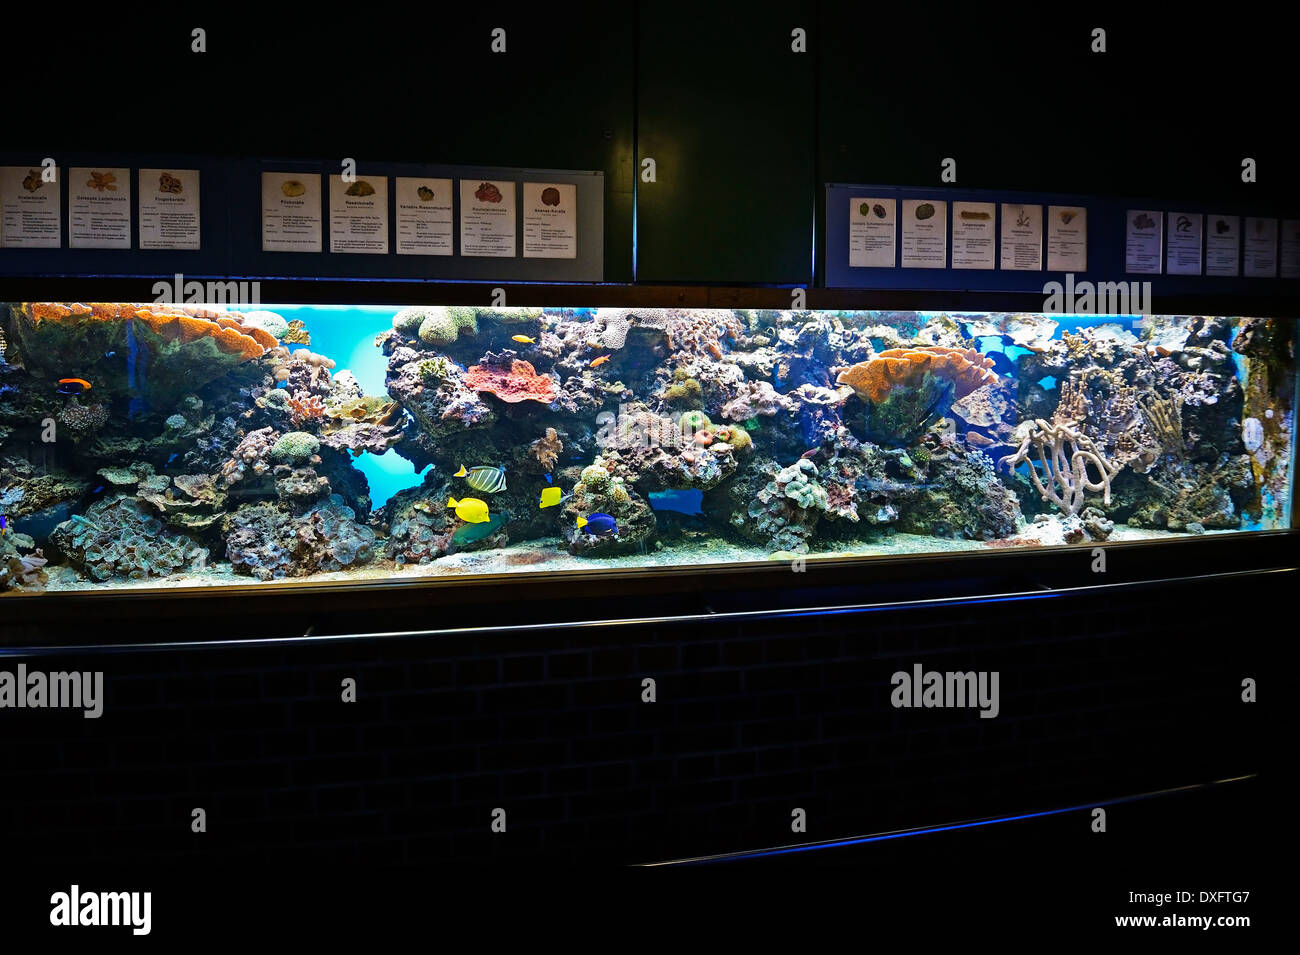 Aquarium, Meeresmuseum, Musée Océanographique, ville hanséatique de Stralsund, Mecklembourg-Poméranie-Occidentale, Allemagne Banque D'Images